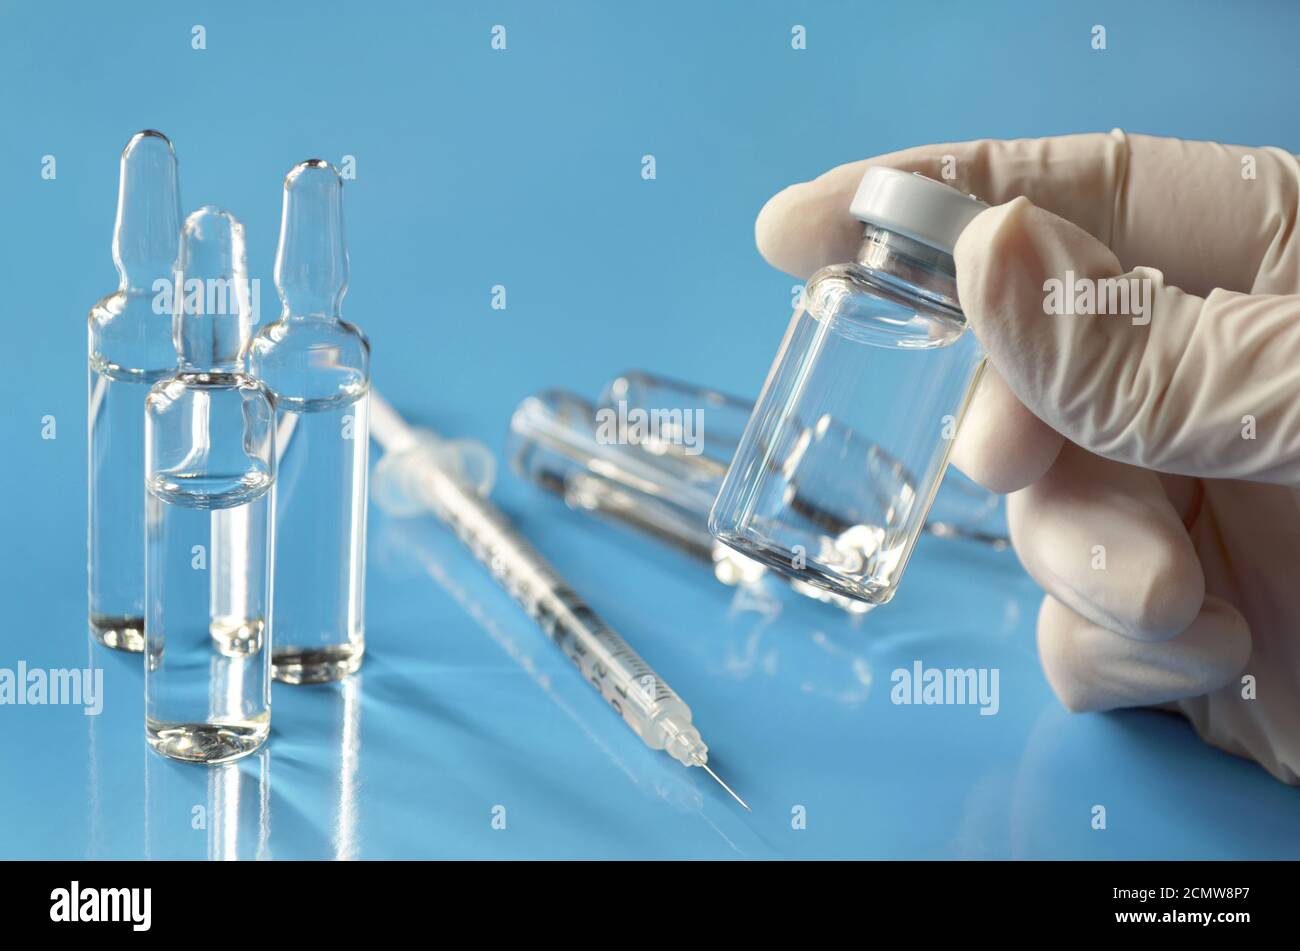 Vial médico de medicamento en manos de un profesional médico sobre un fondo azul claro con ampollas de vidrio y una jeringa desechable. Foto de stock